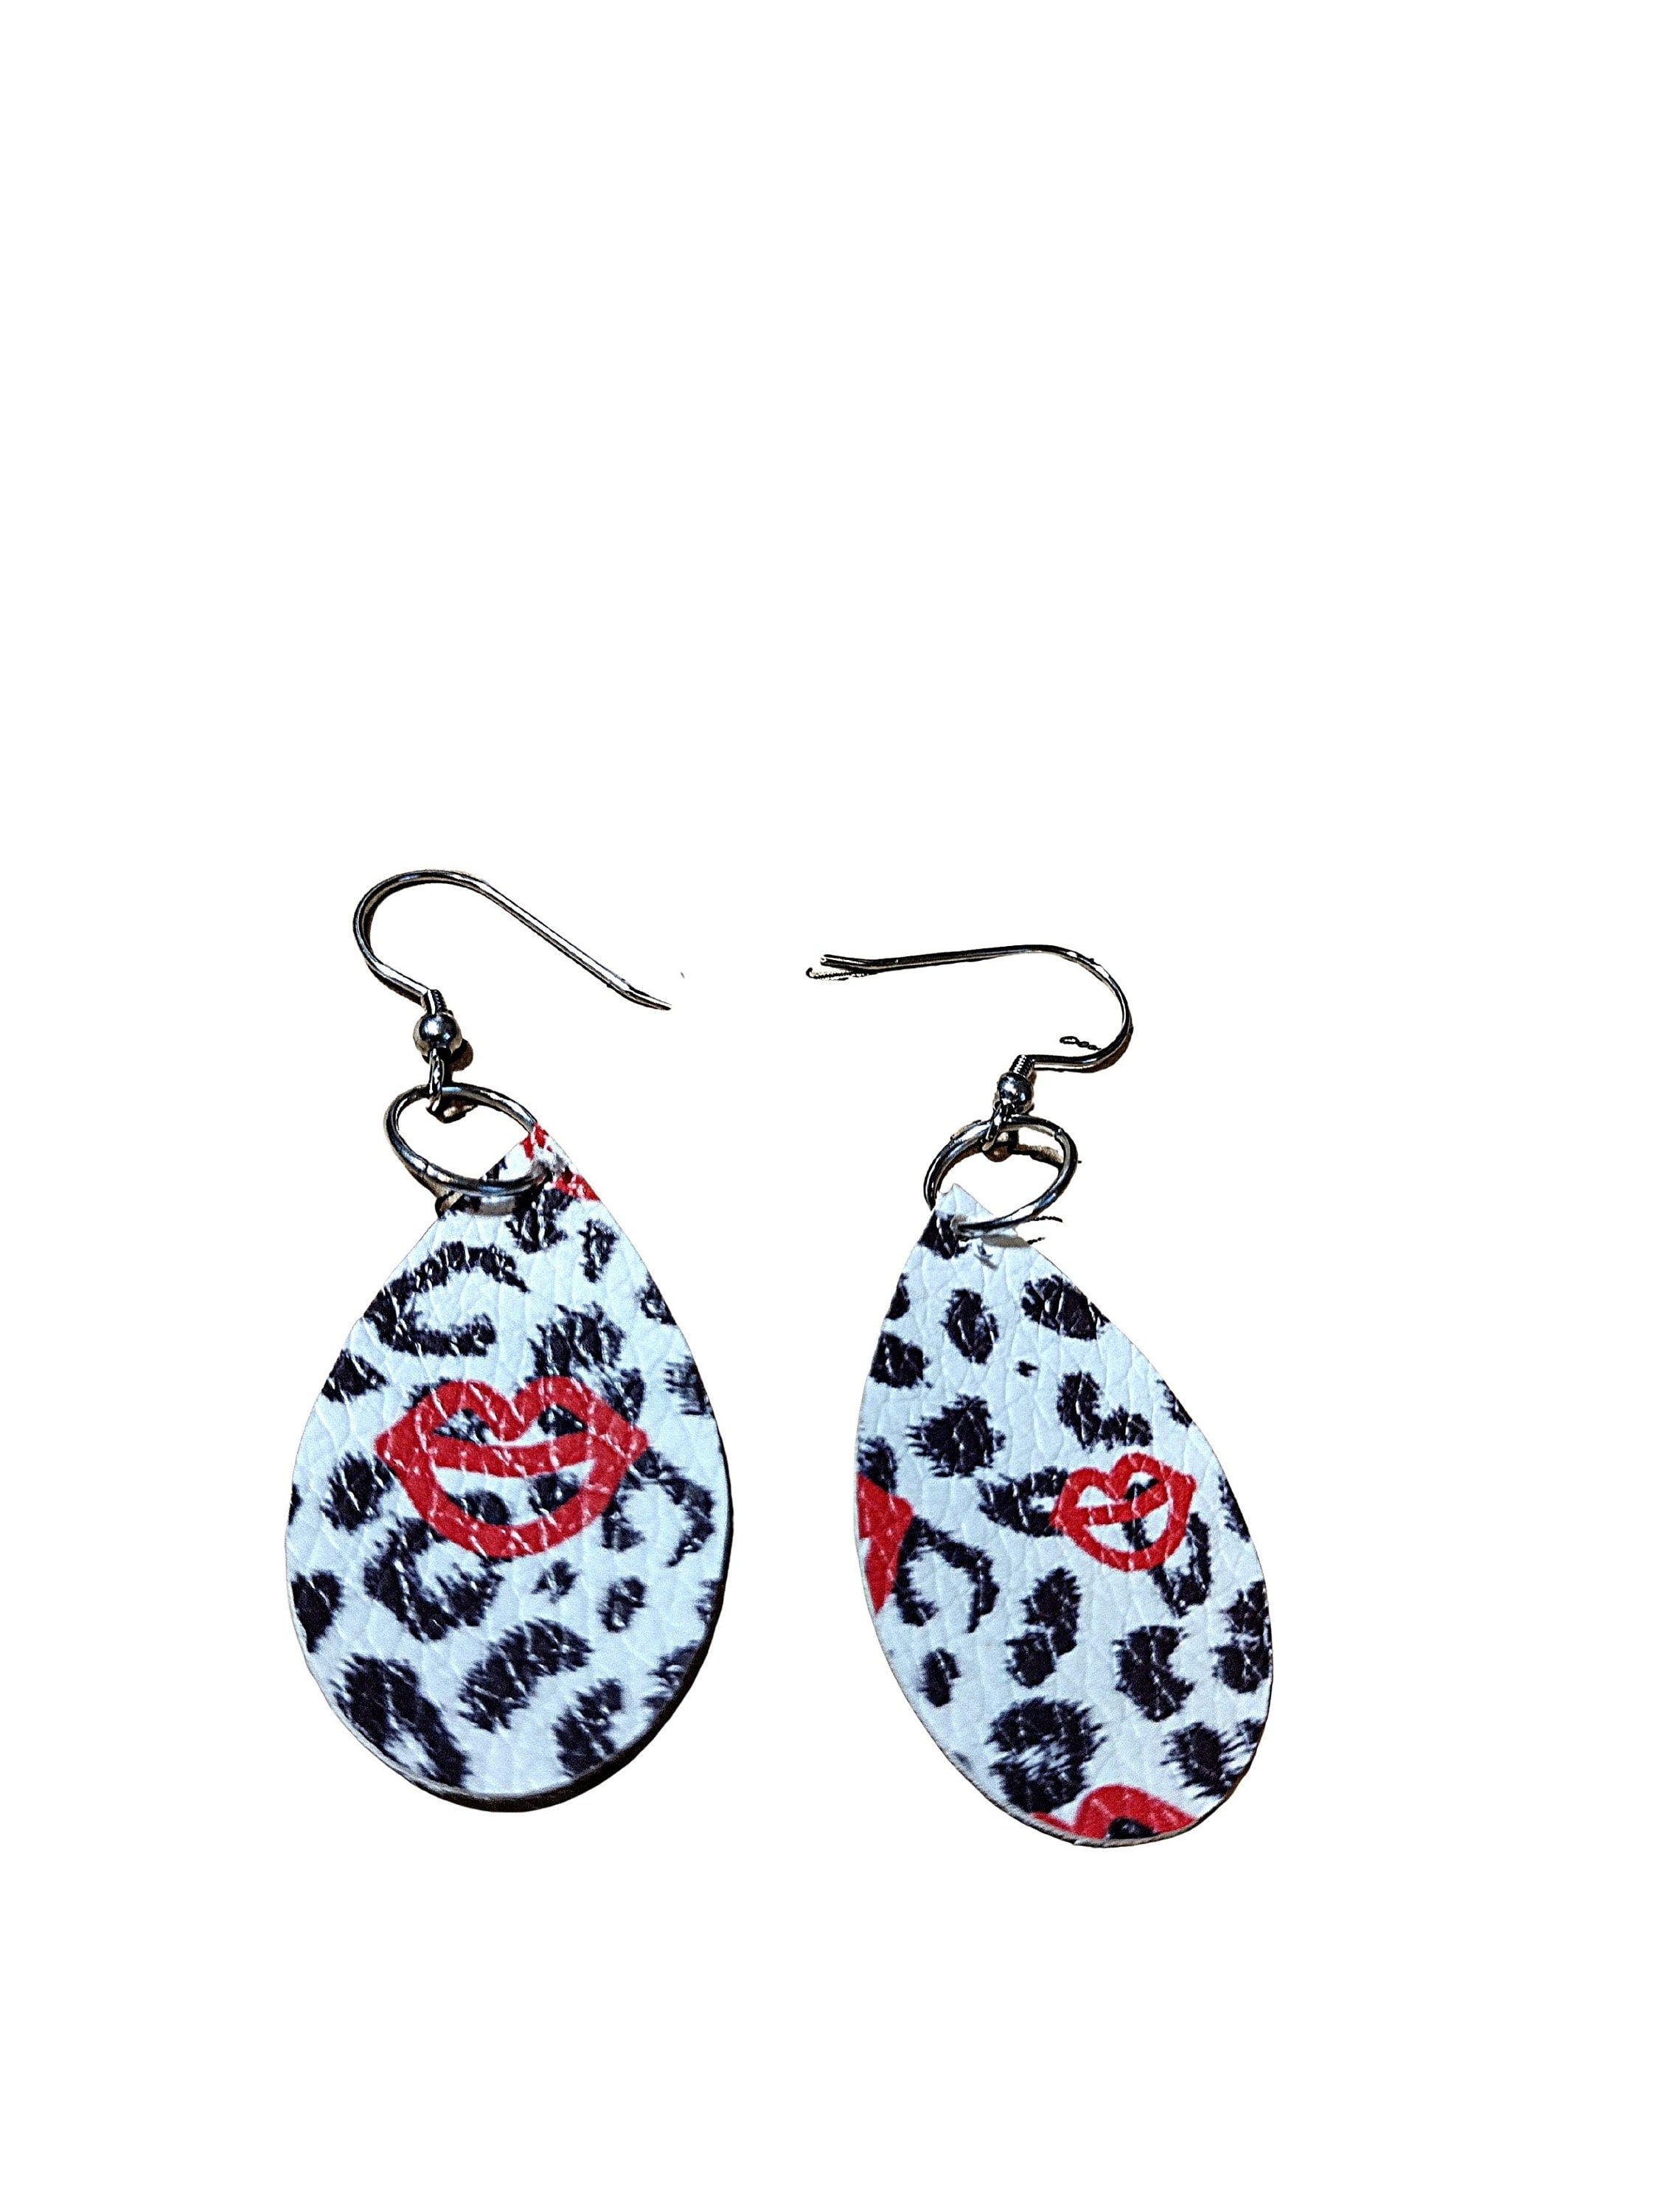 Leopard Print Teardrop Leather Earrings by Keep it Gypsy – Sweet